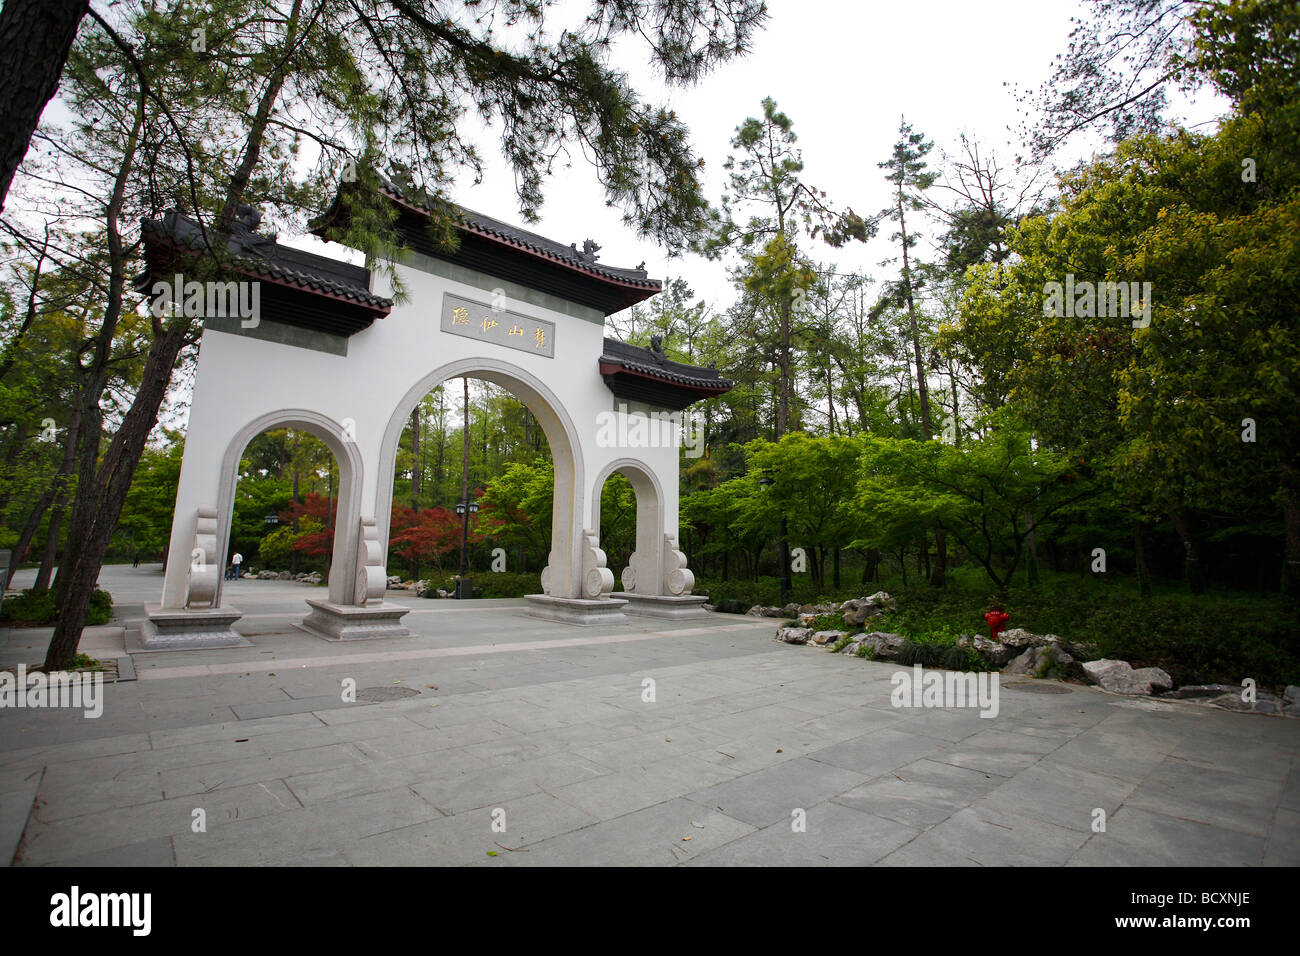 Lingyin Temple,Hangzhou,Zhejiang Province,China Stock Photo